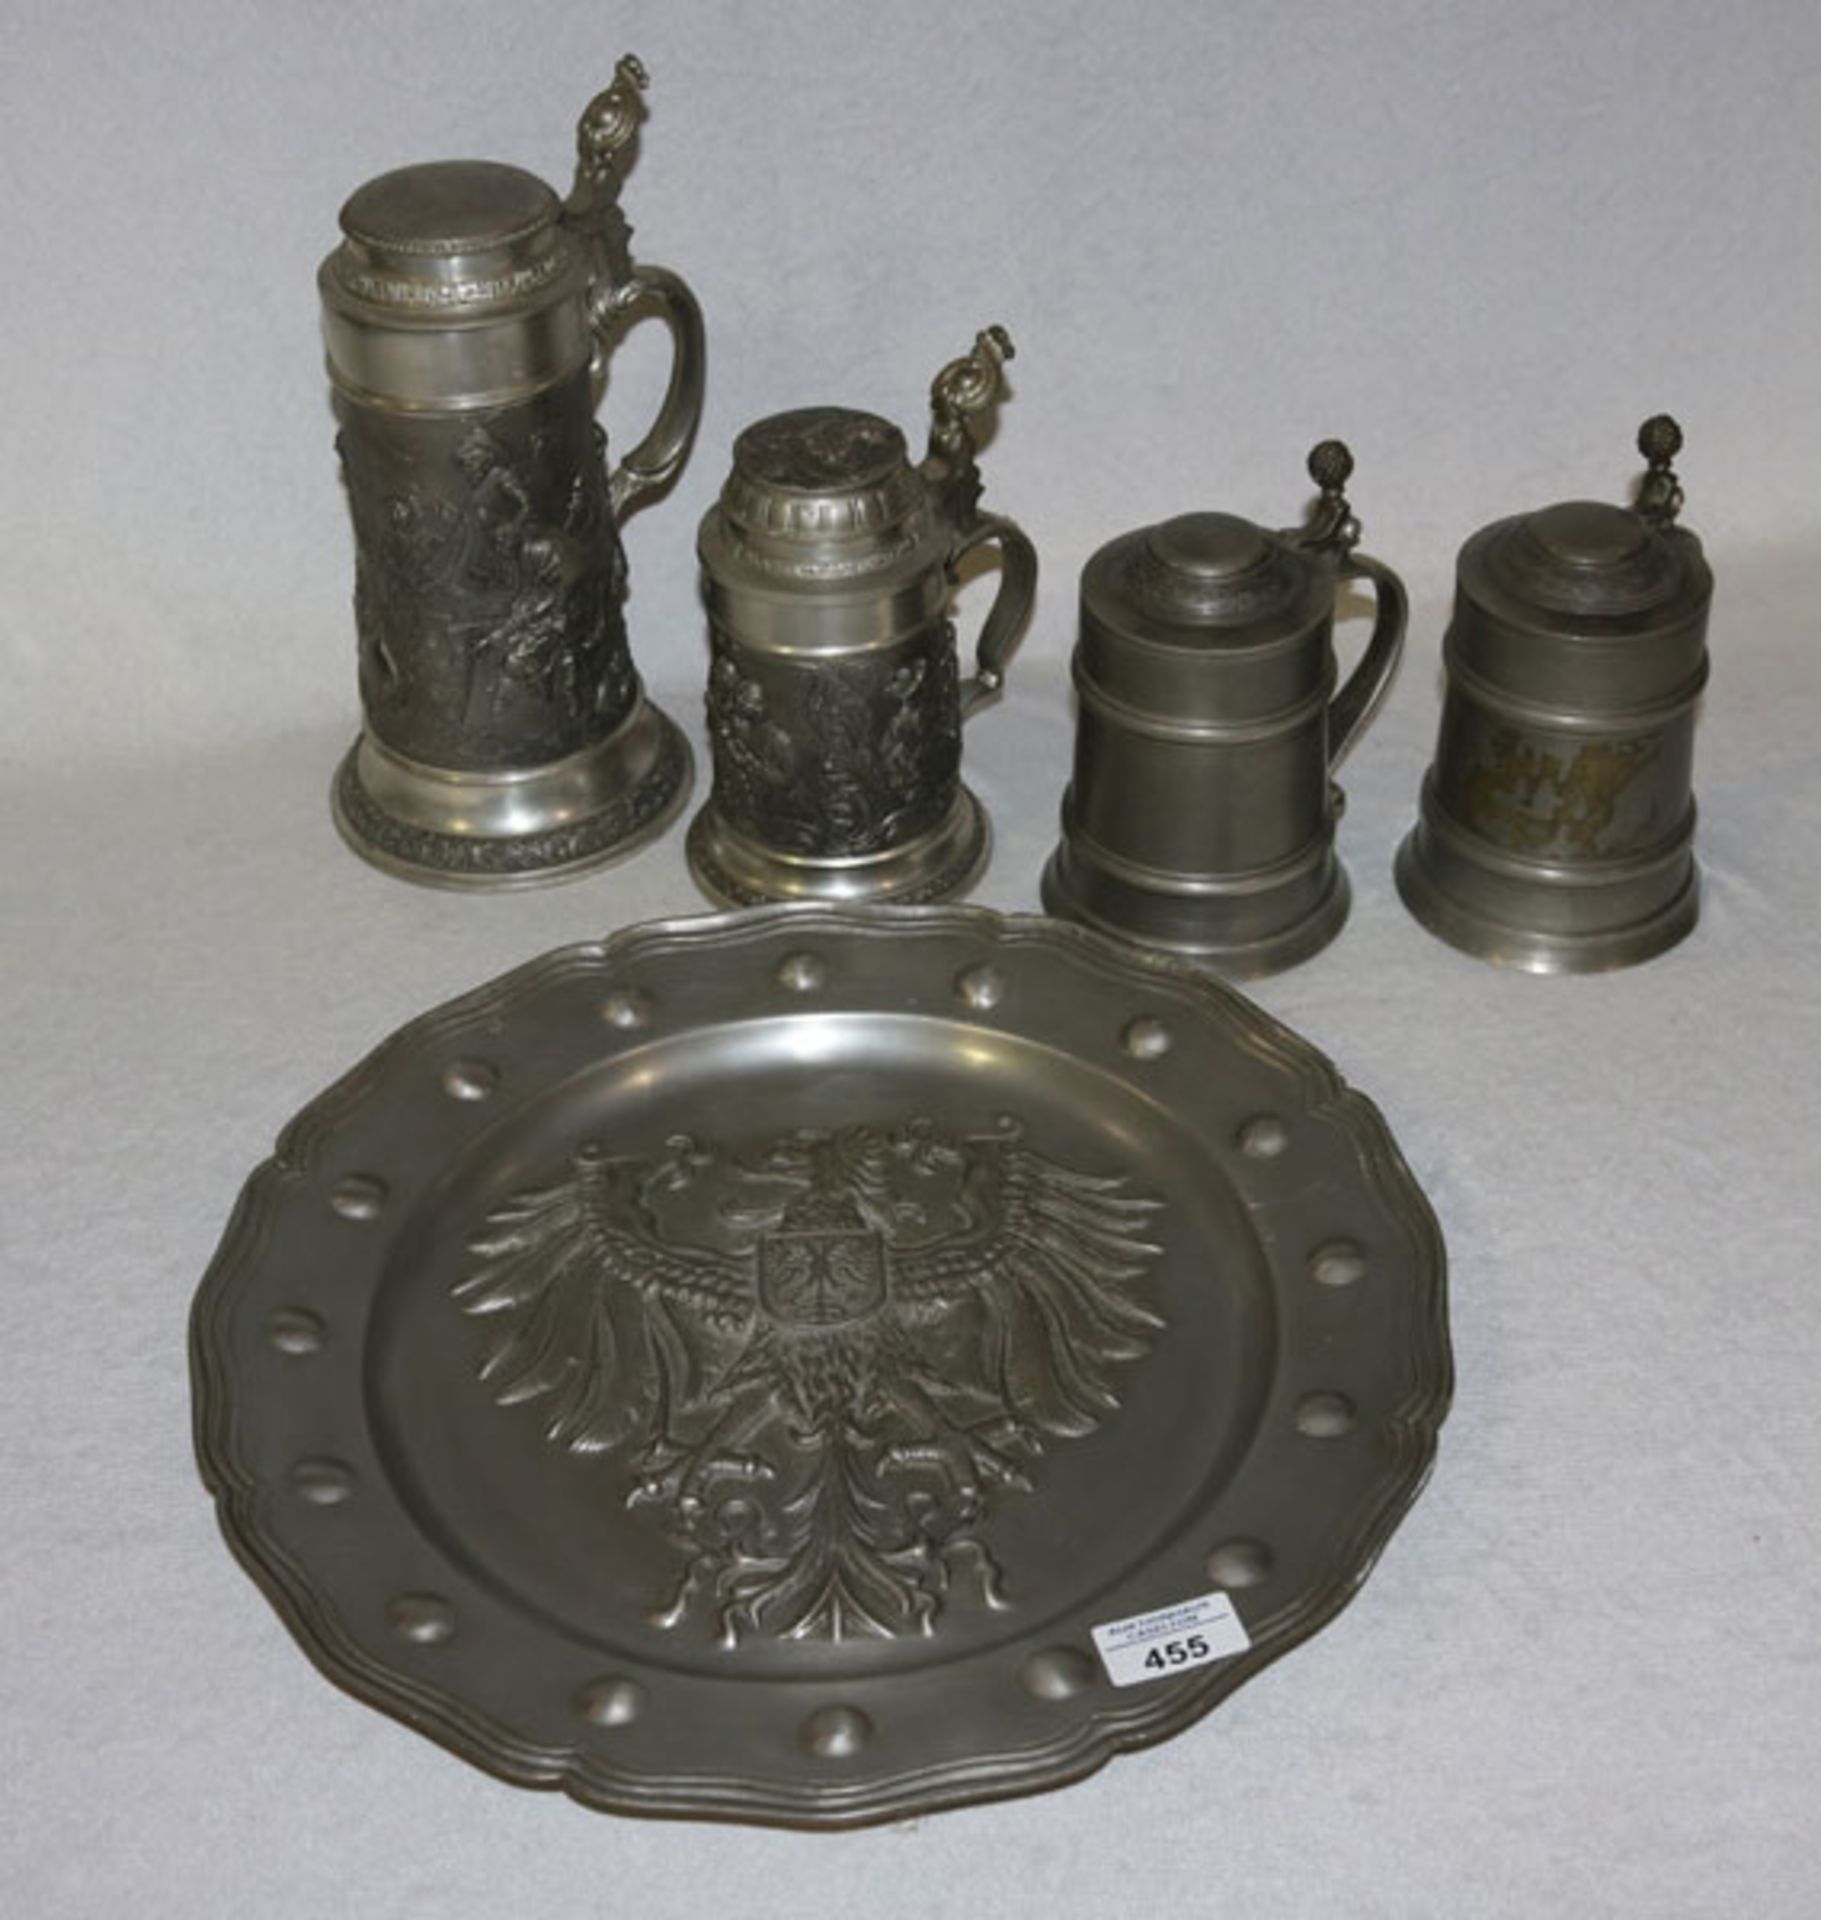 Großer Zinnteller mit reliefiertem Wappendekor, D 38 cm, 4 Zinnkruge mit Deckel, H 17/27 cm,